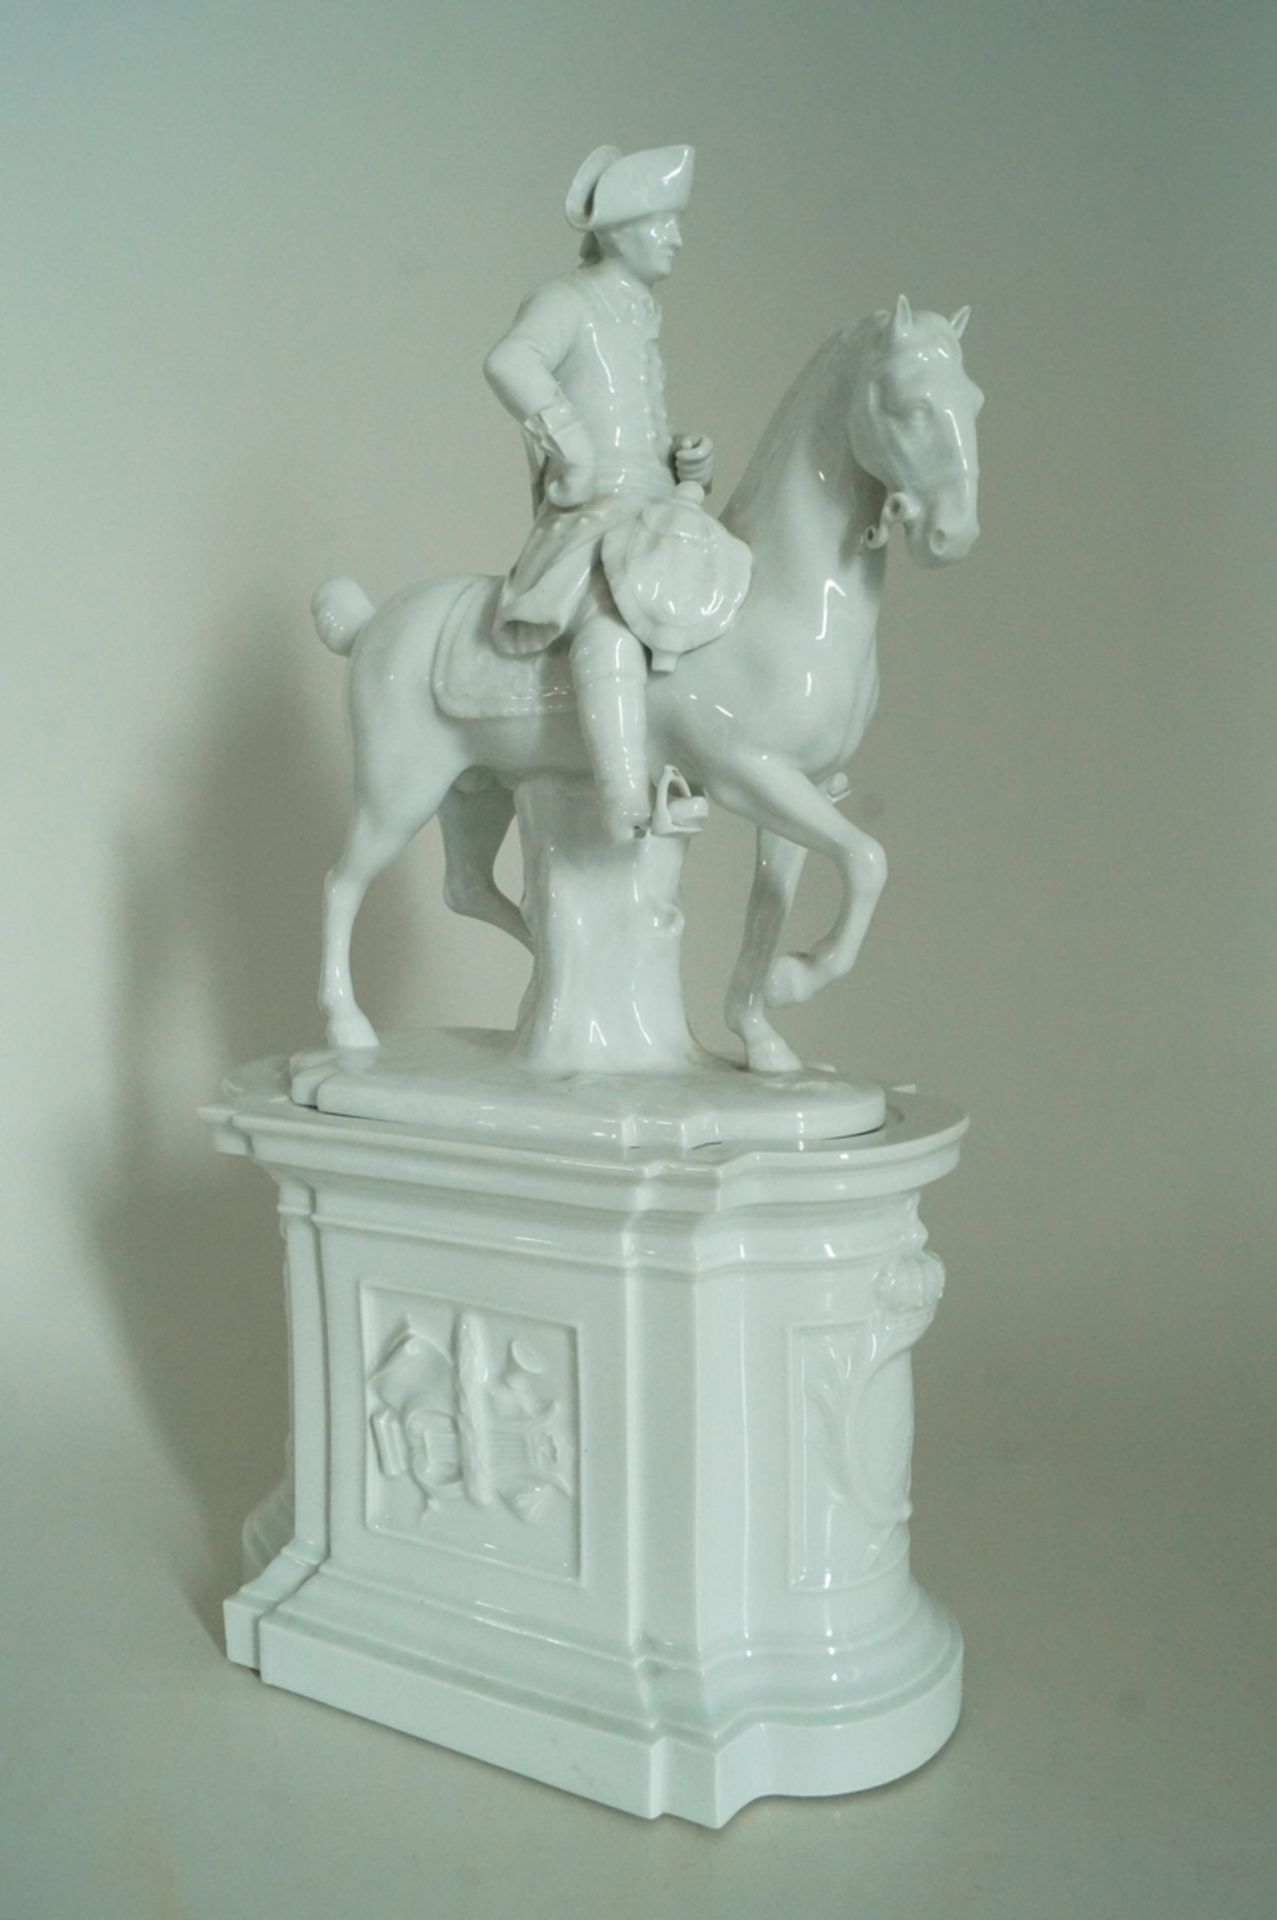 Friedrich II. zu Pferd auf Sockel; Große Porzellanfigur vom "Alten Fritz" zu Pferd auf Denkmalsocke